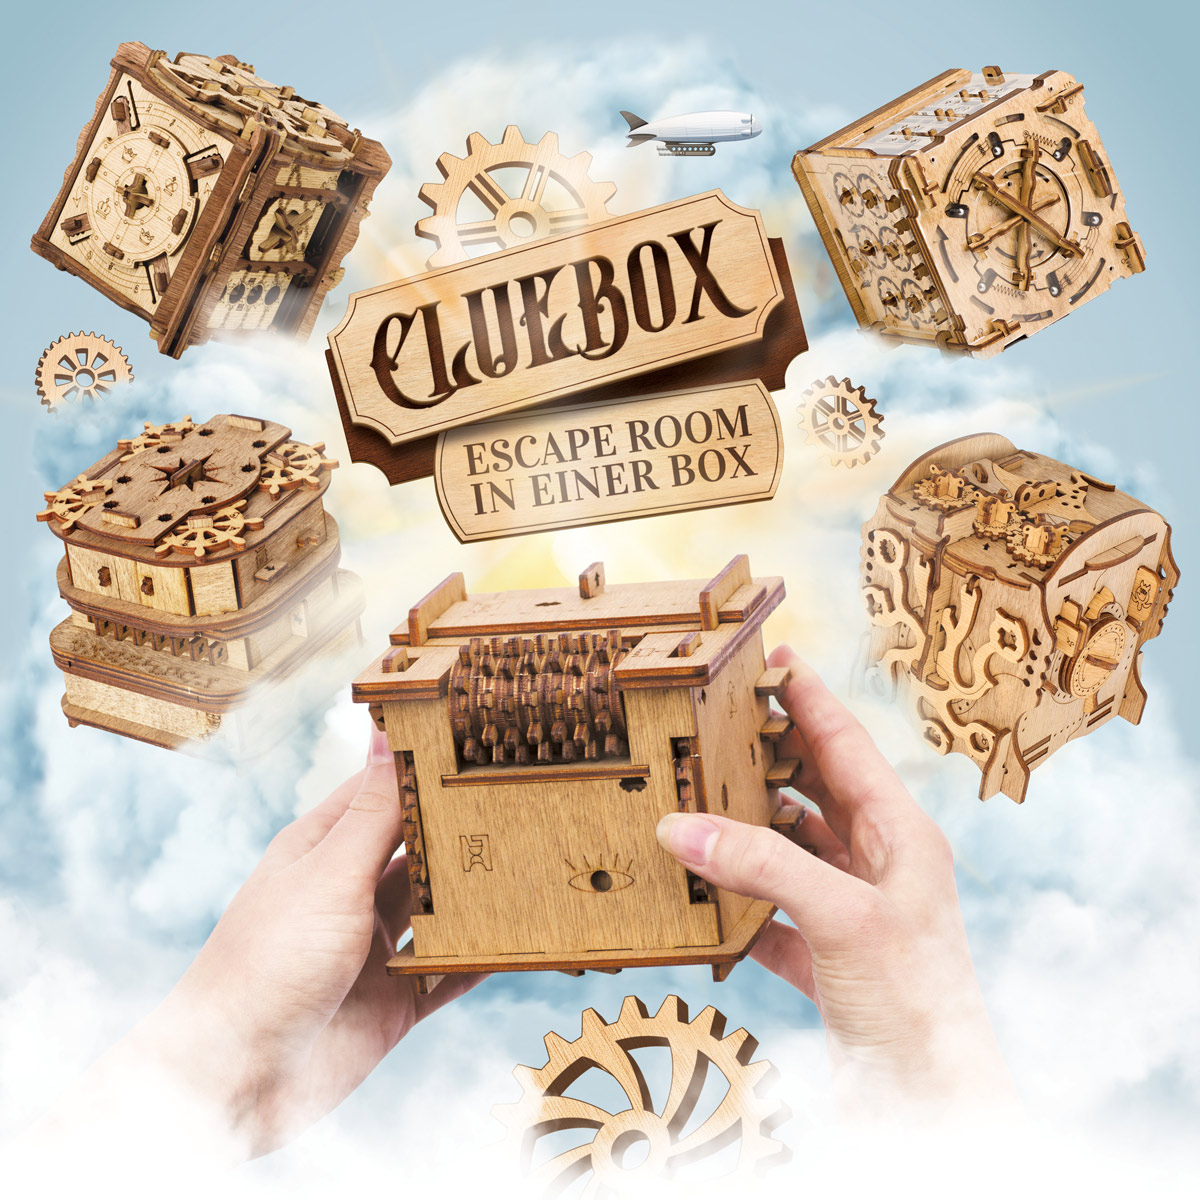 Cluebox - Escape Room in a box puzzle